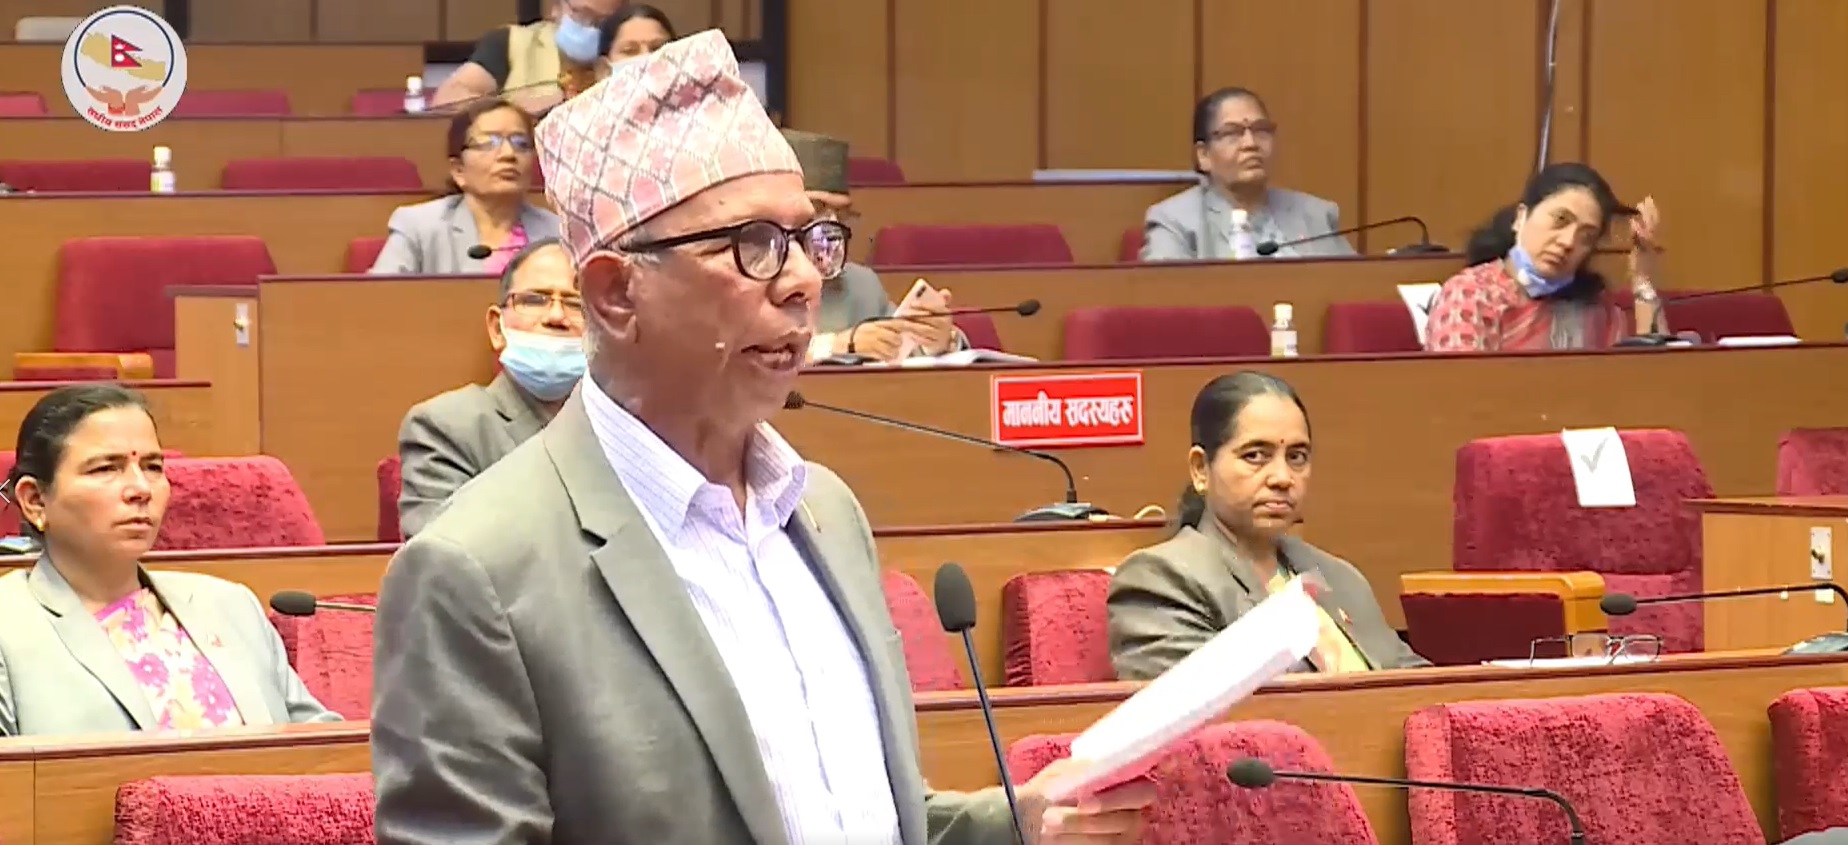 नेकपा सांसदको प्रश्नः नेपाल आफ्नै खुट्टामा उभिन खोज्दा कांग्रेसलाई किन आपत्ति ? (भिडियोसहित)